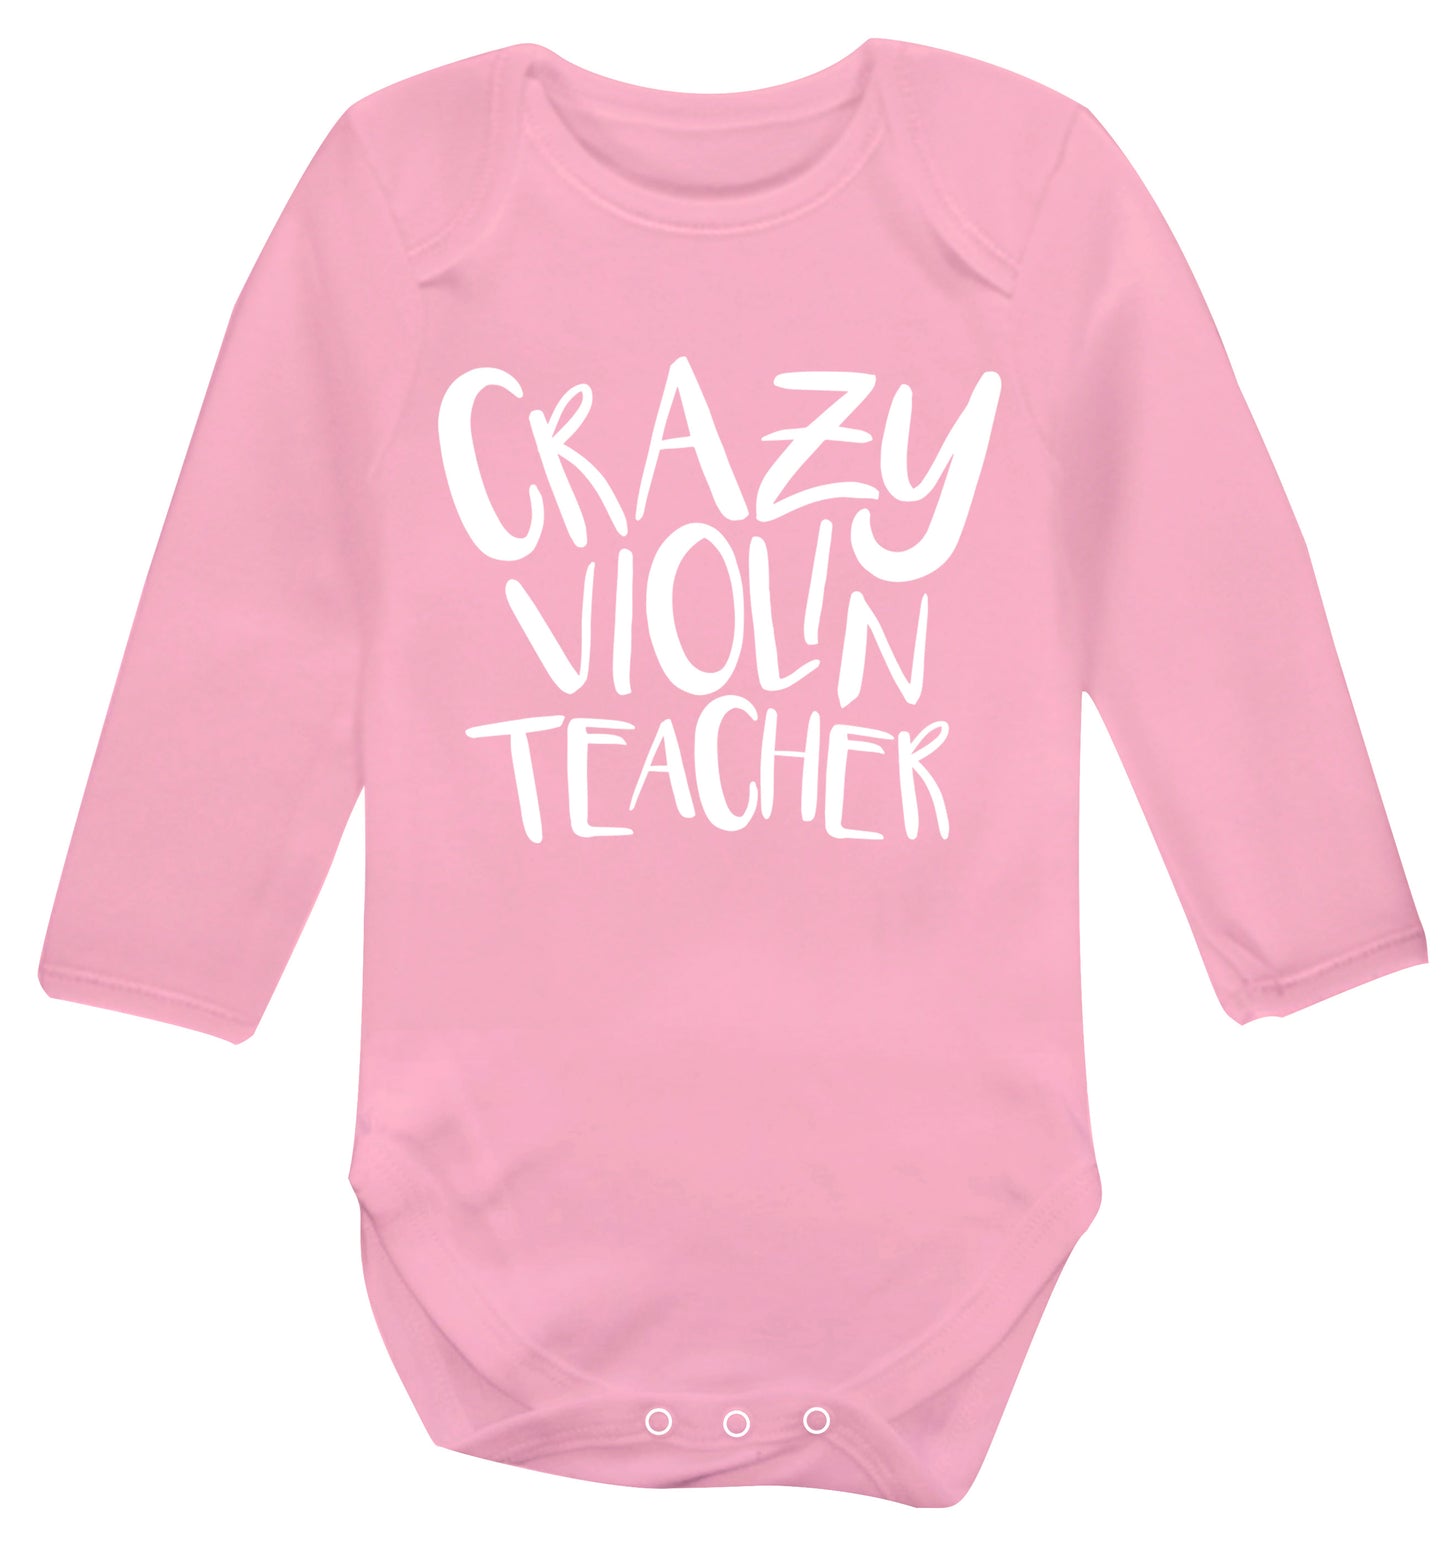 Crazy violin teacher Baby Vest long sleeved pale pink 6-12 months